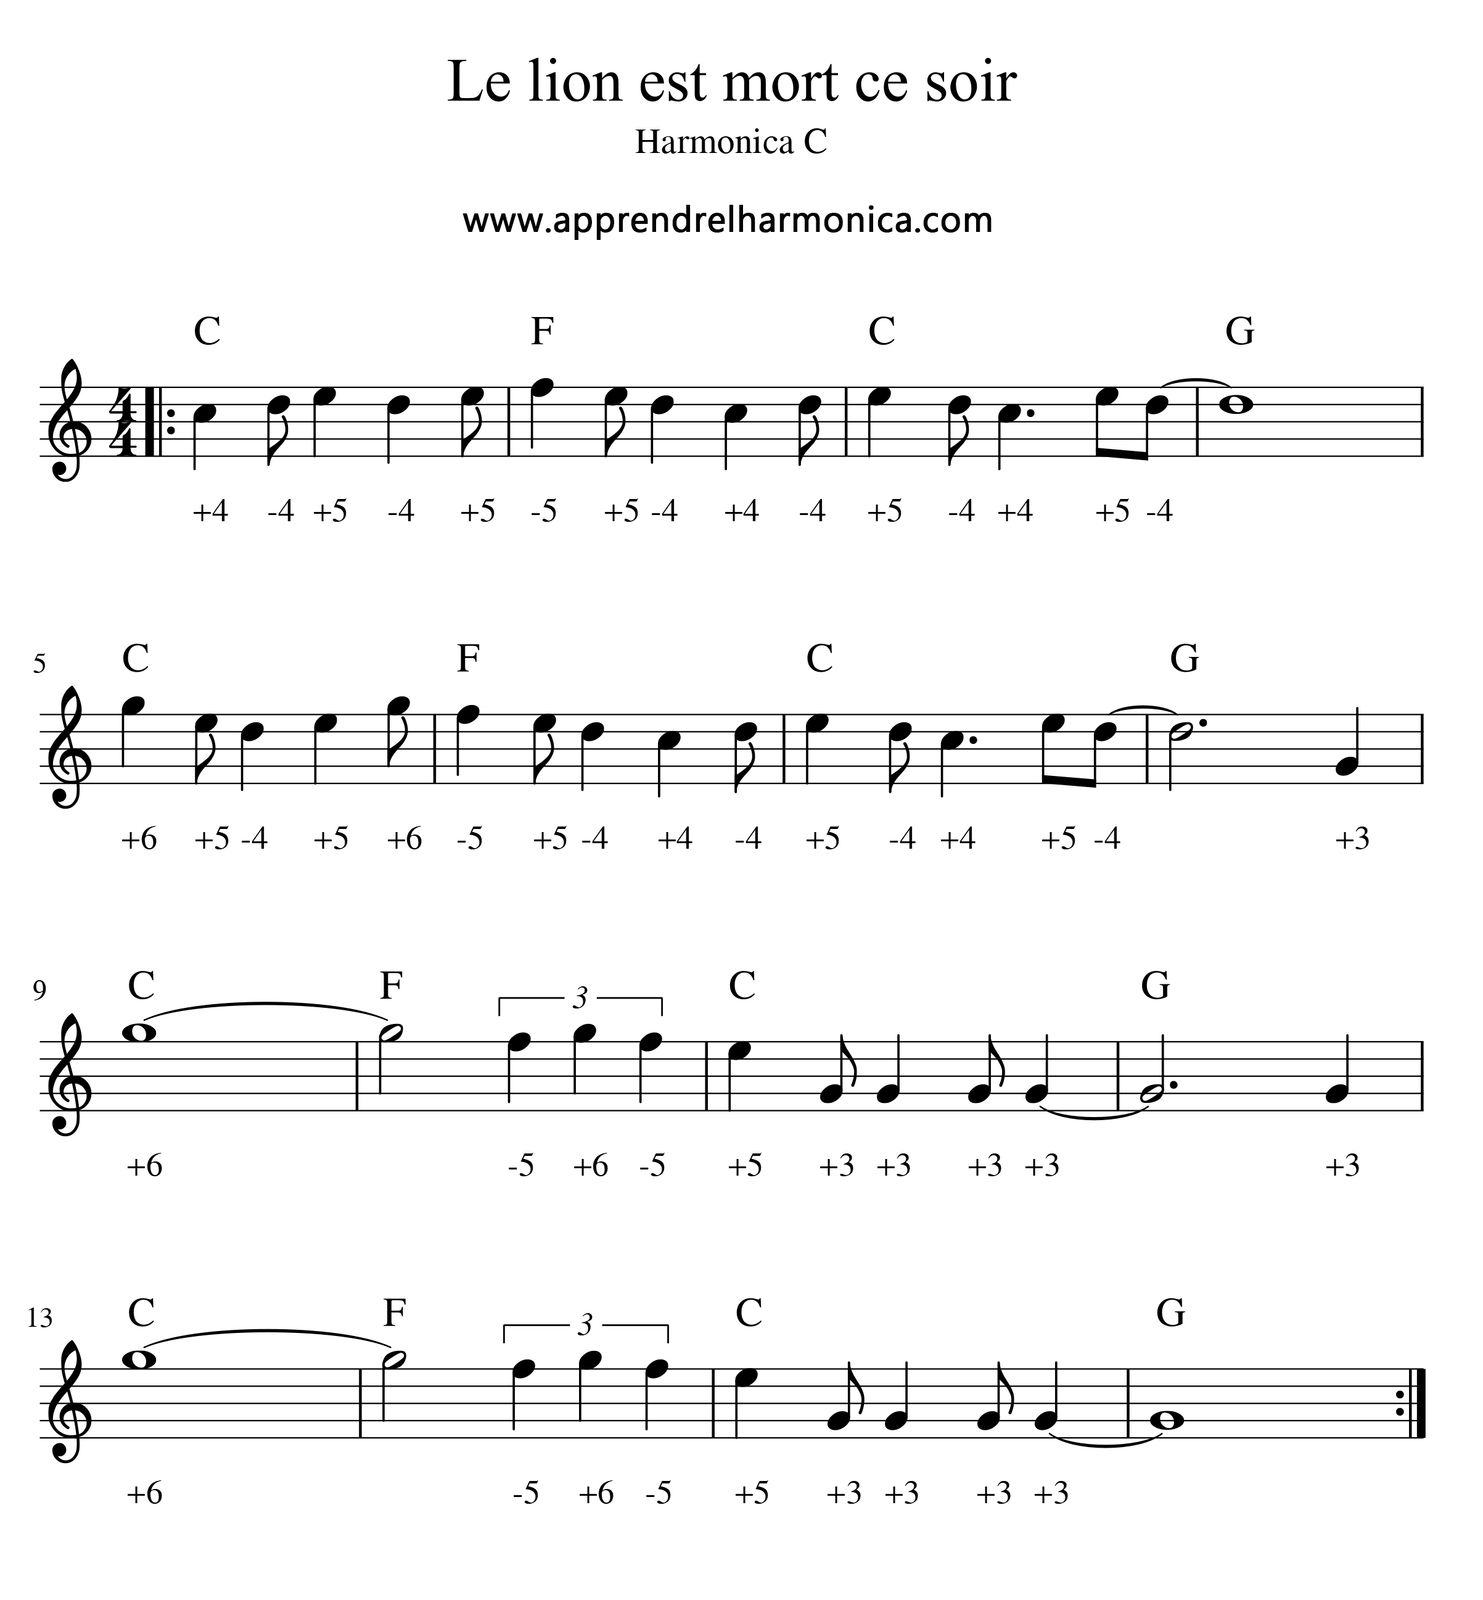 Le lion est mort ce soir - Harmonica C - Le blog du site  apprendrelharmonica.com